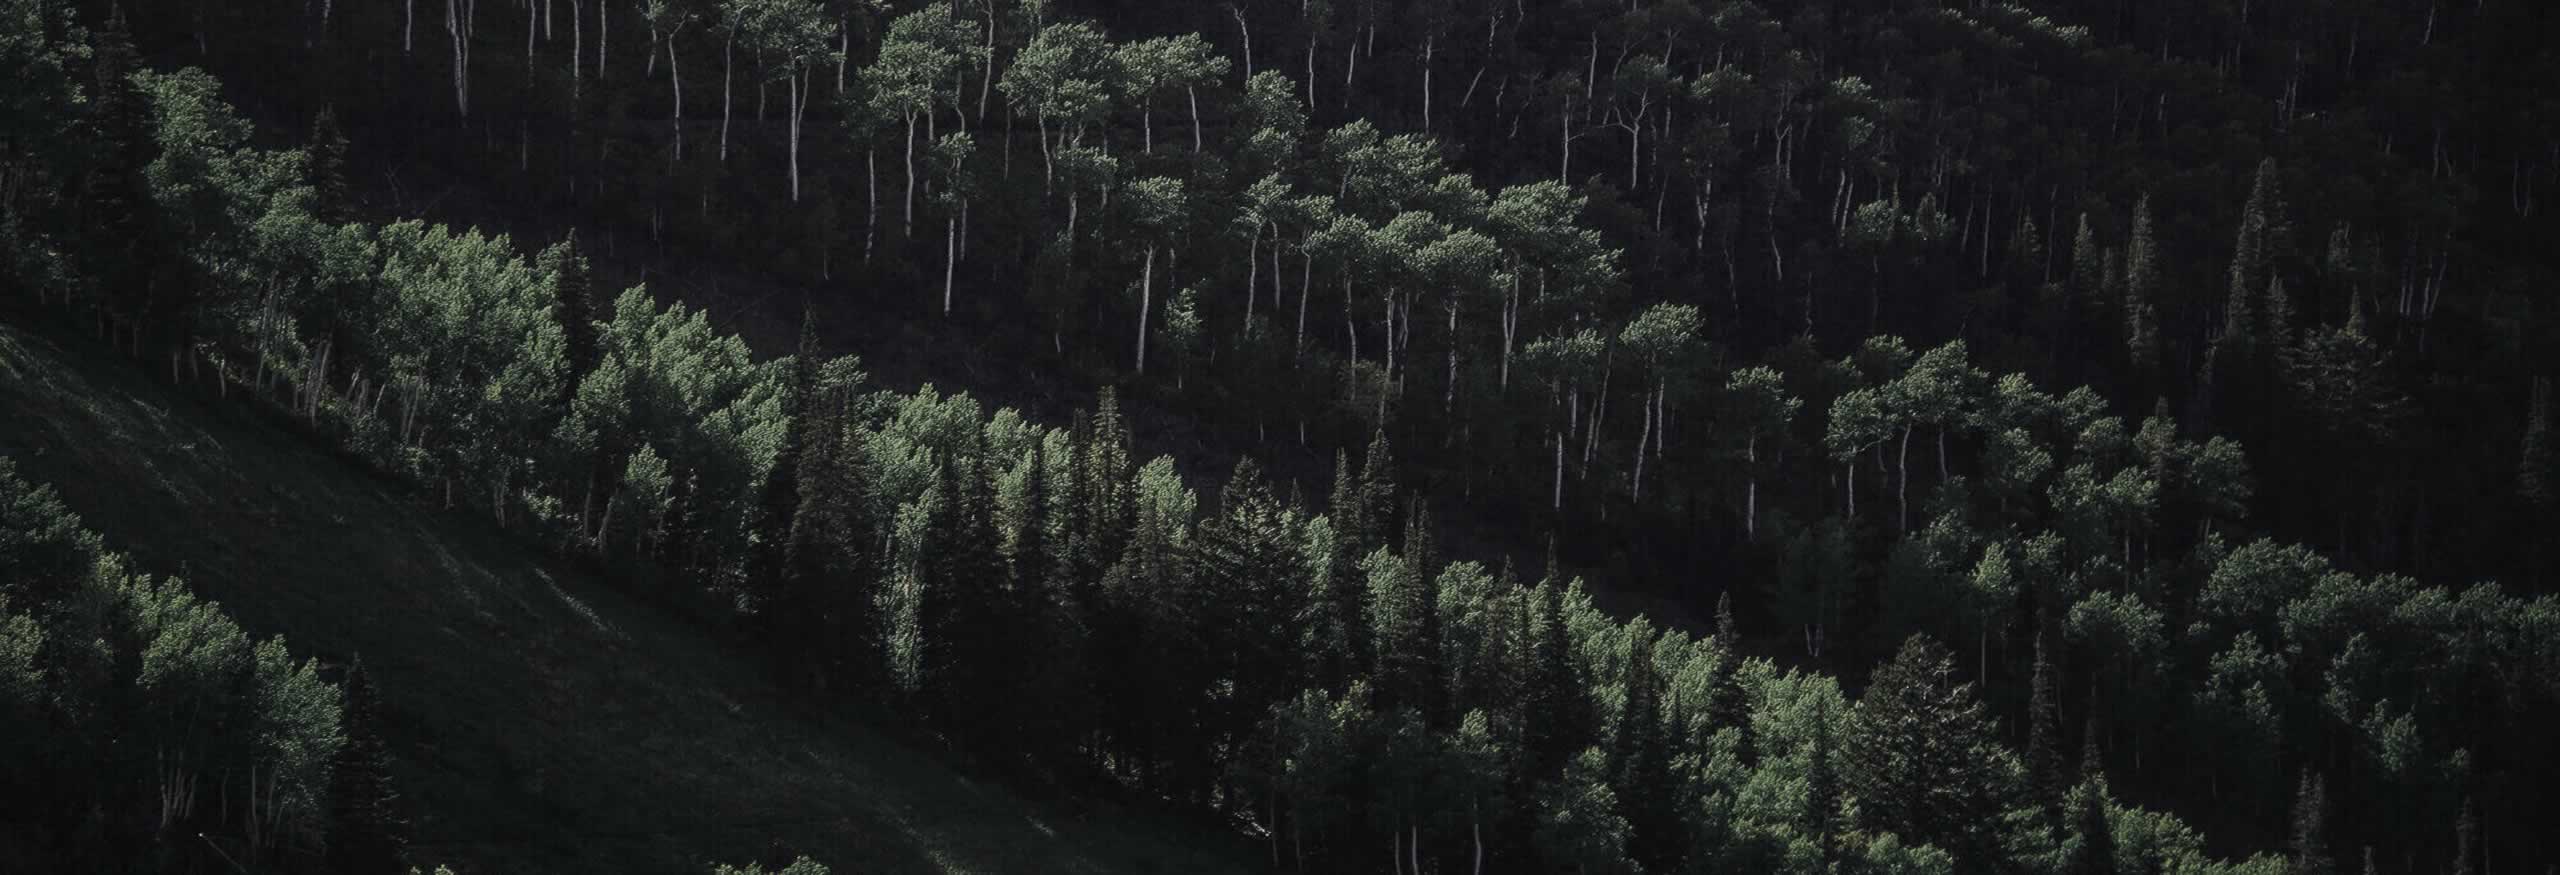 Deep forest